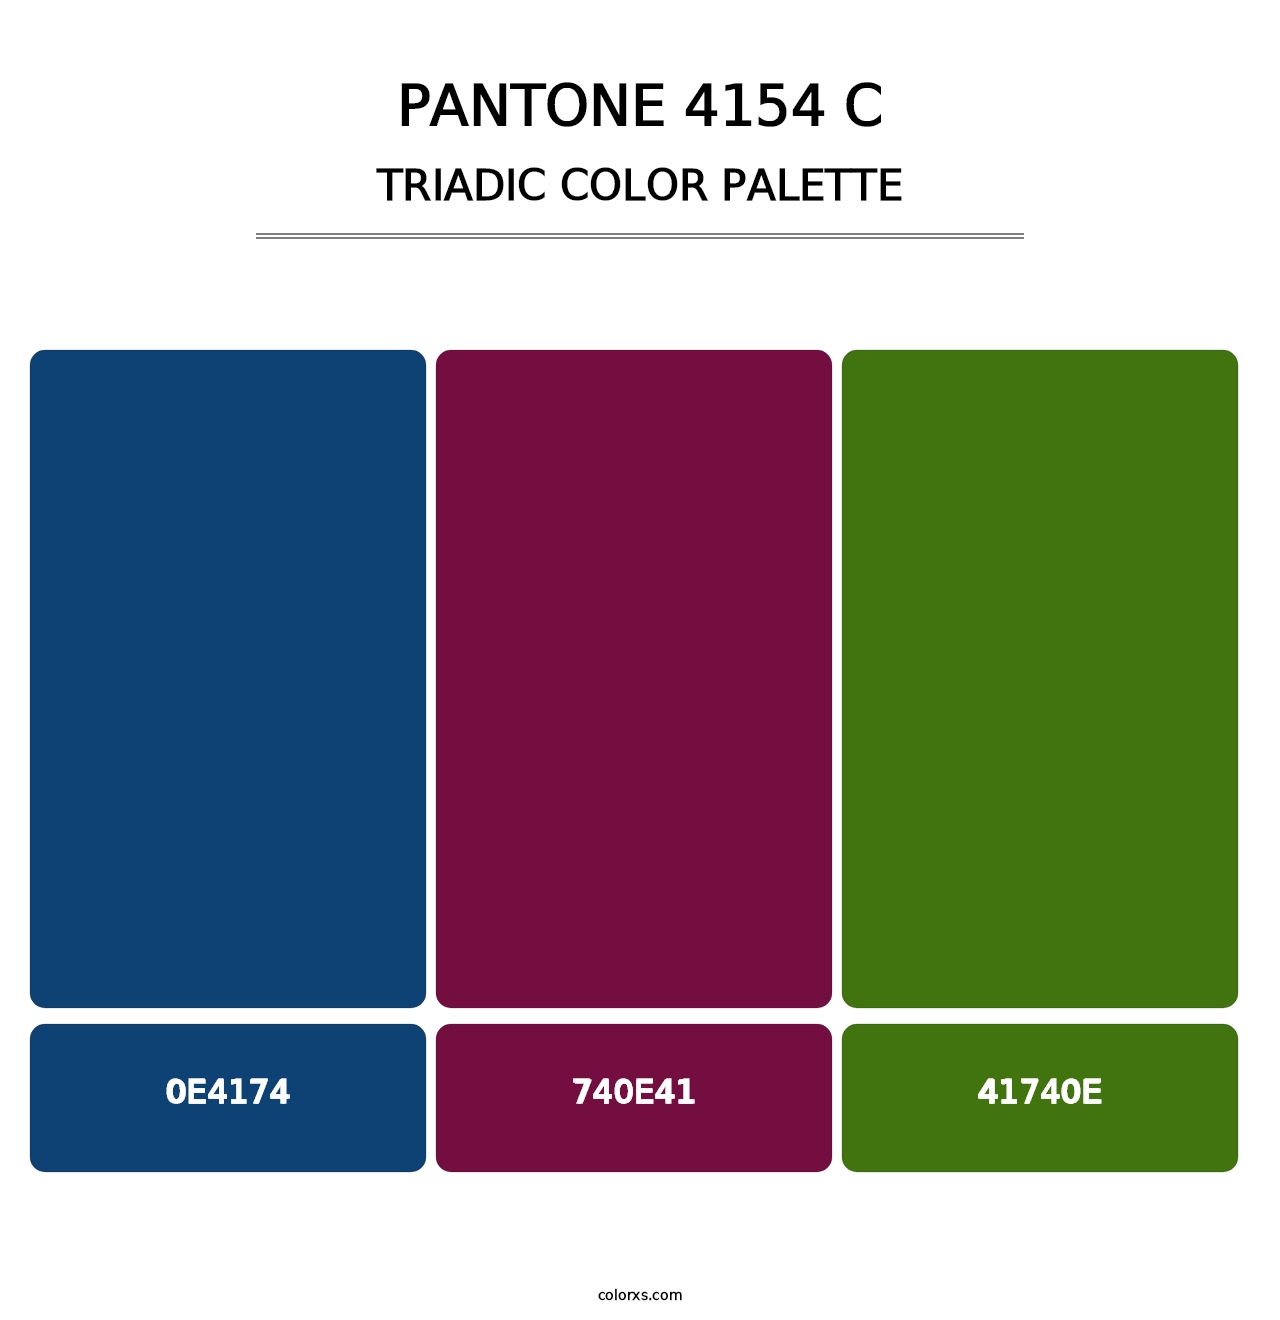 PANTONE 4154 C - Triadic Color Palette